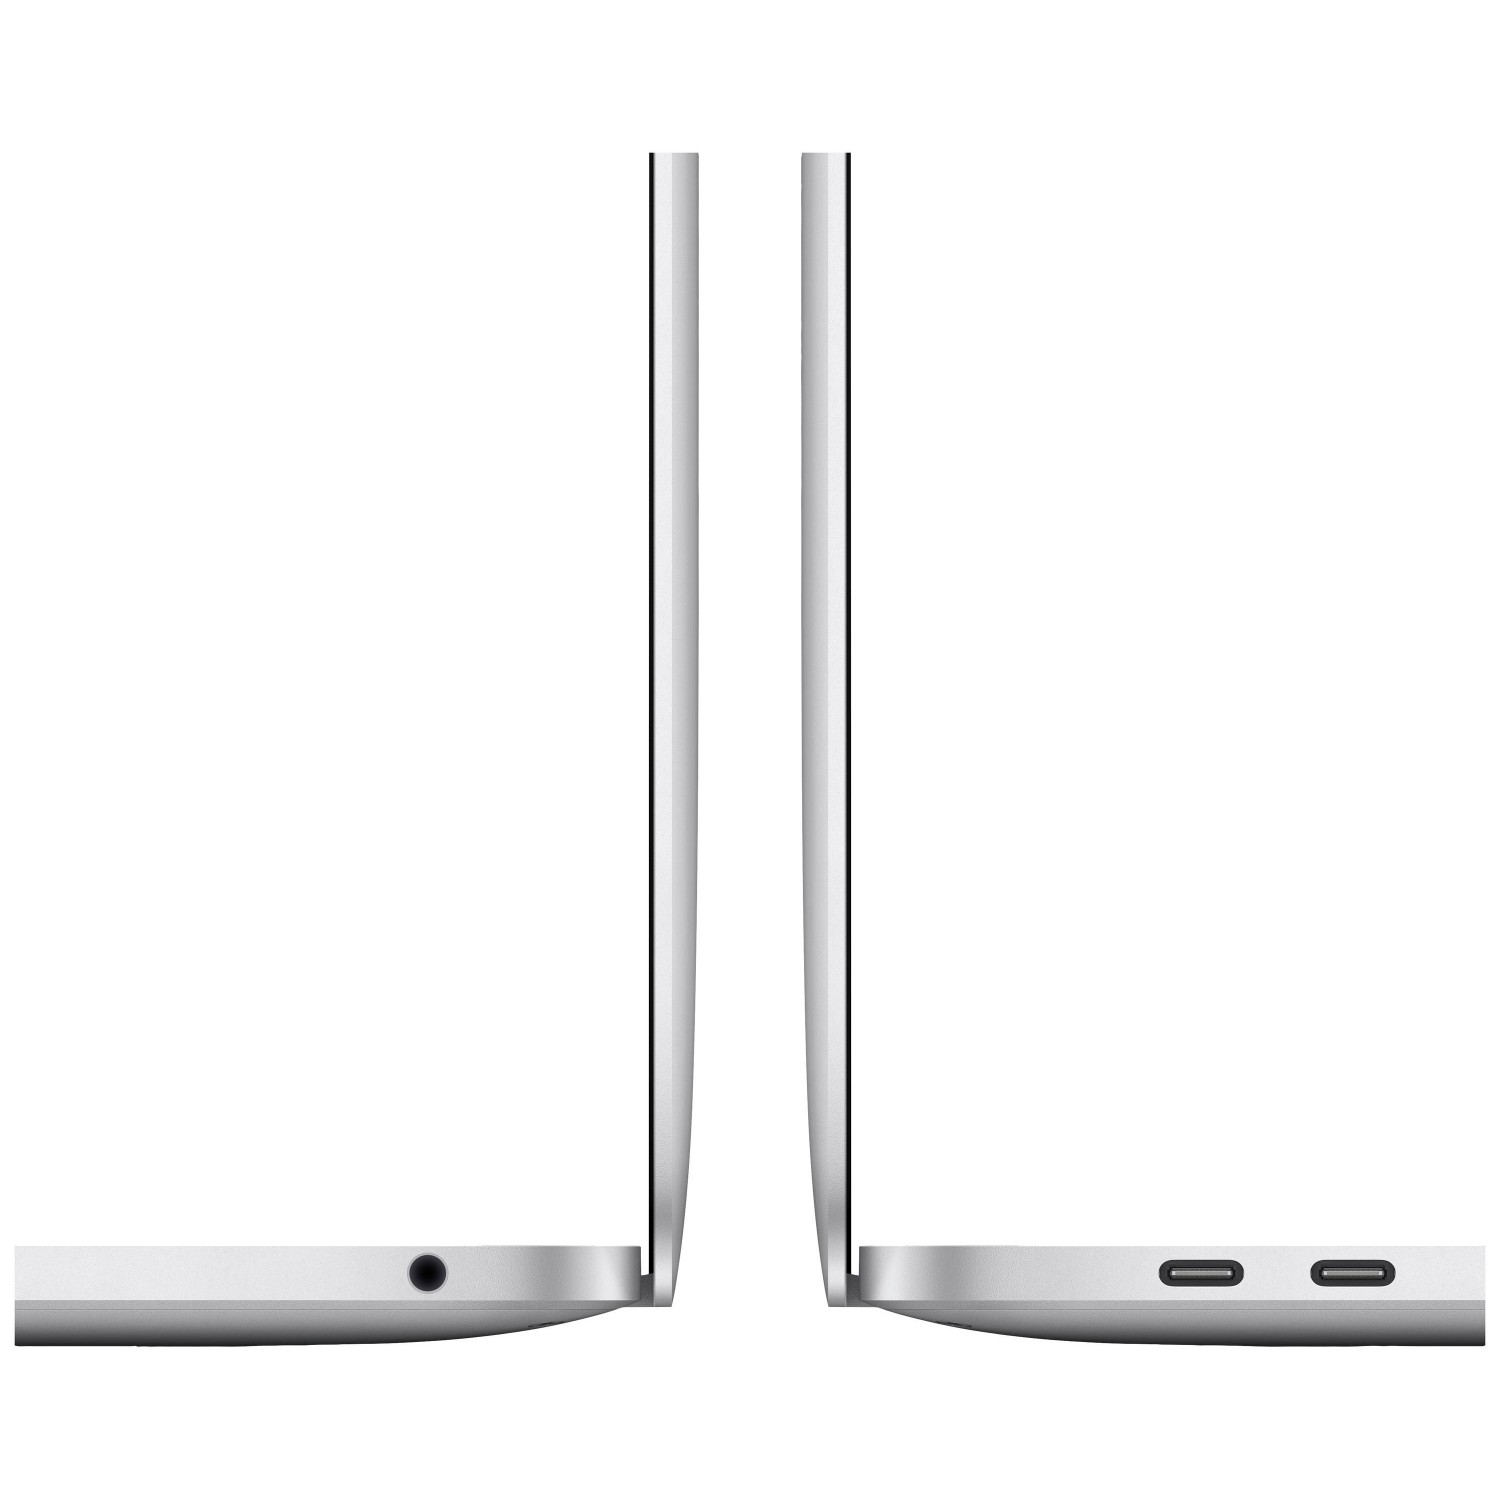 لپ تاپ Apple MacBook Pro 13 2020 CTO - Silver - C-3